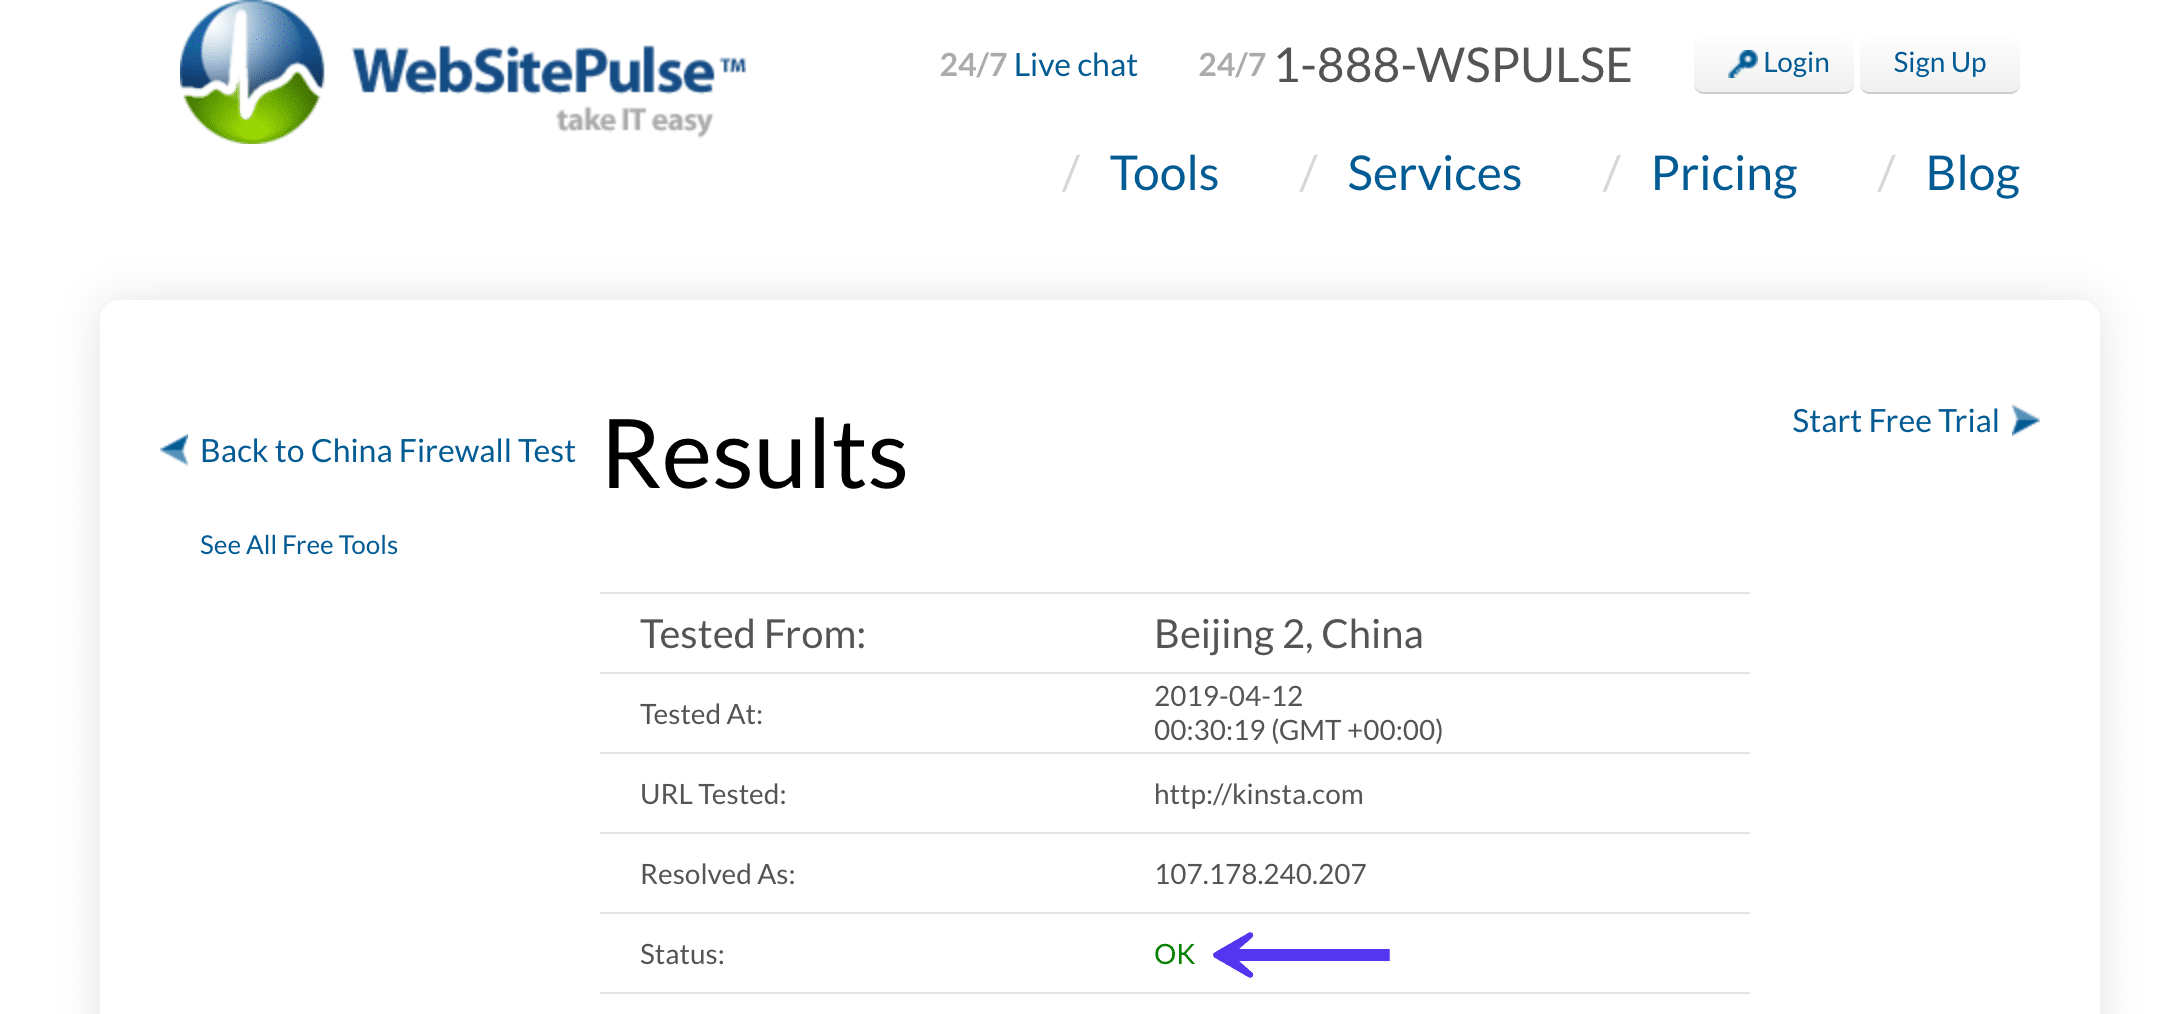 Verificar o site por trás da Grande Firewall da China